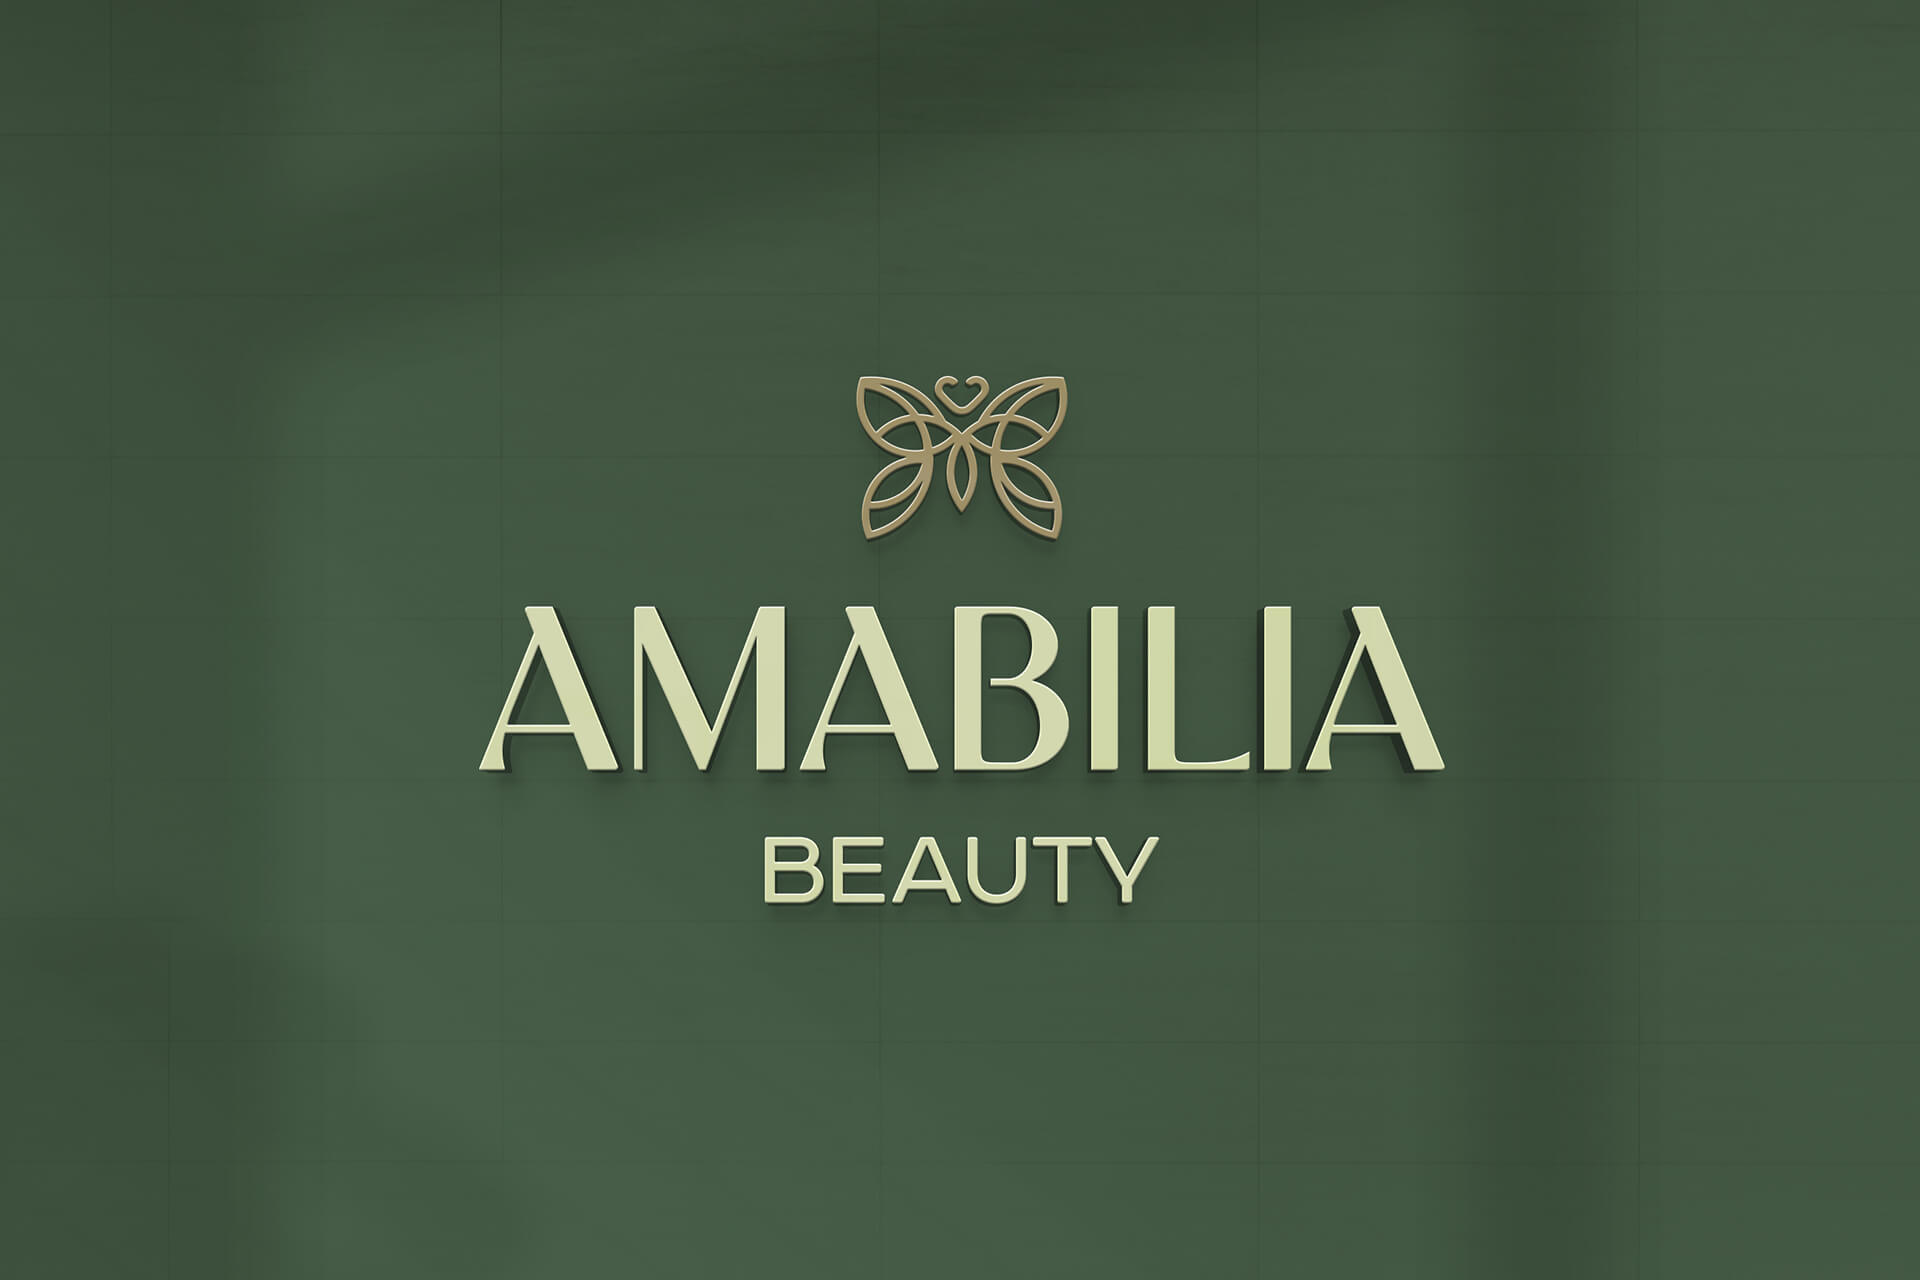 Amabilia Beauty Visual Identity